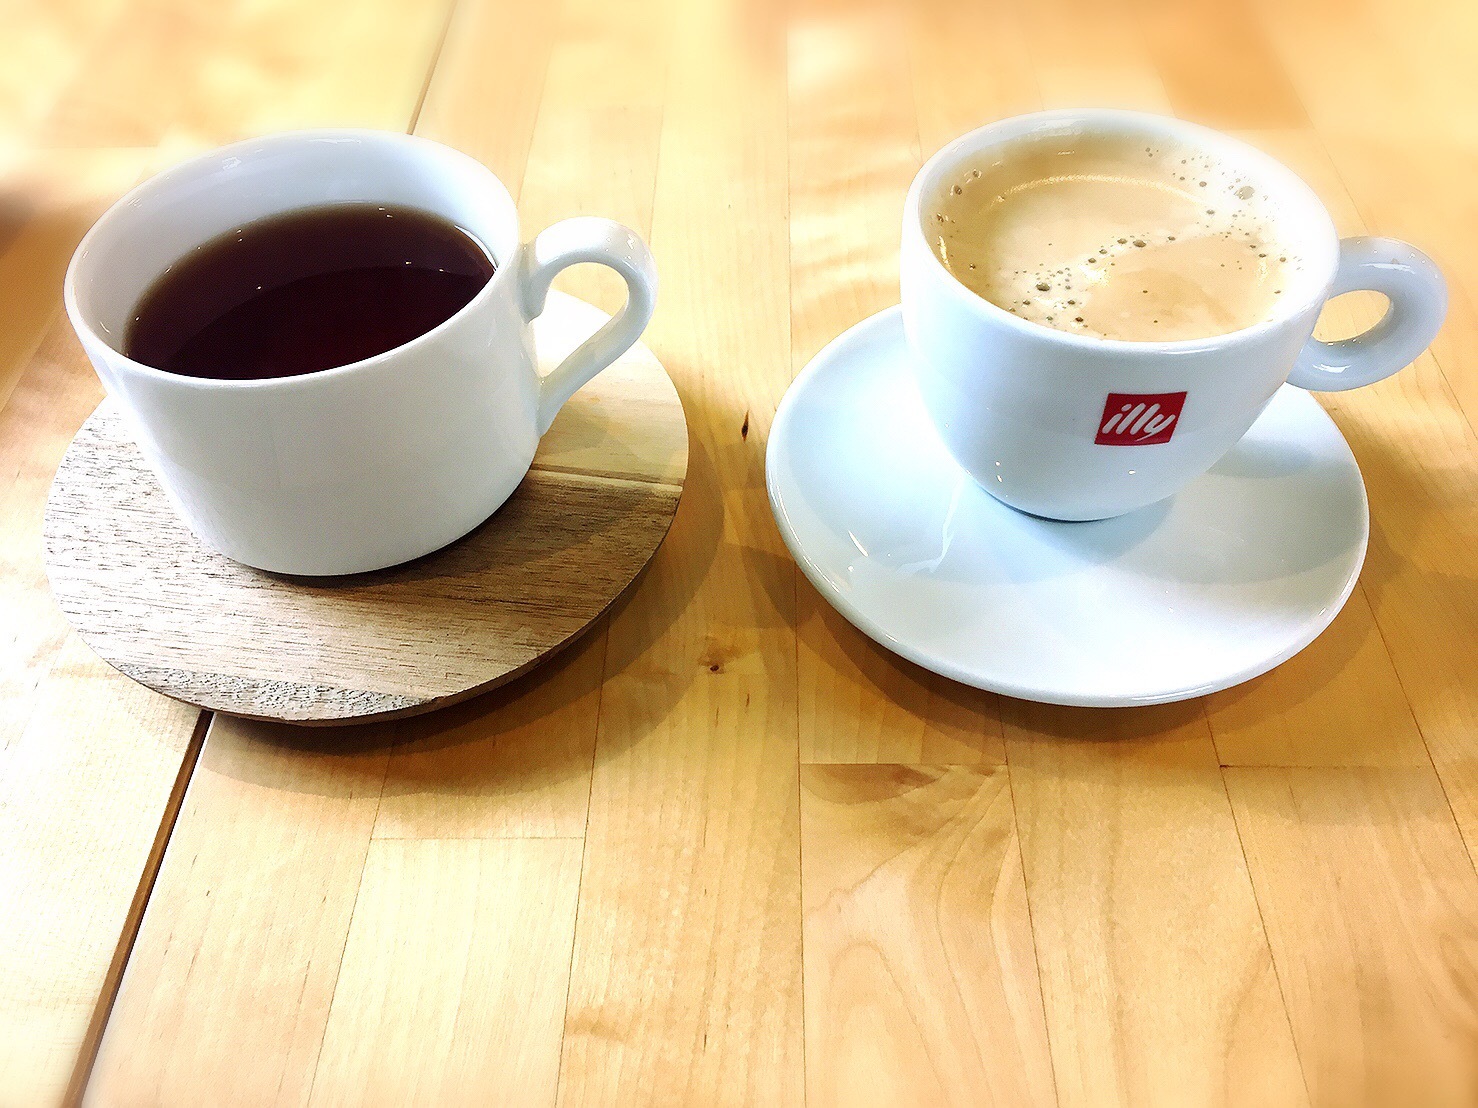 バニーズホーンのコーヒーと紅茶